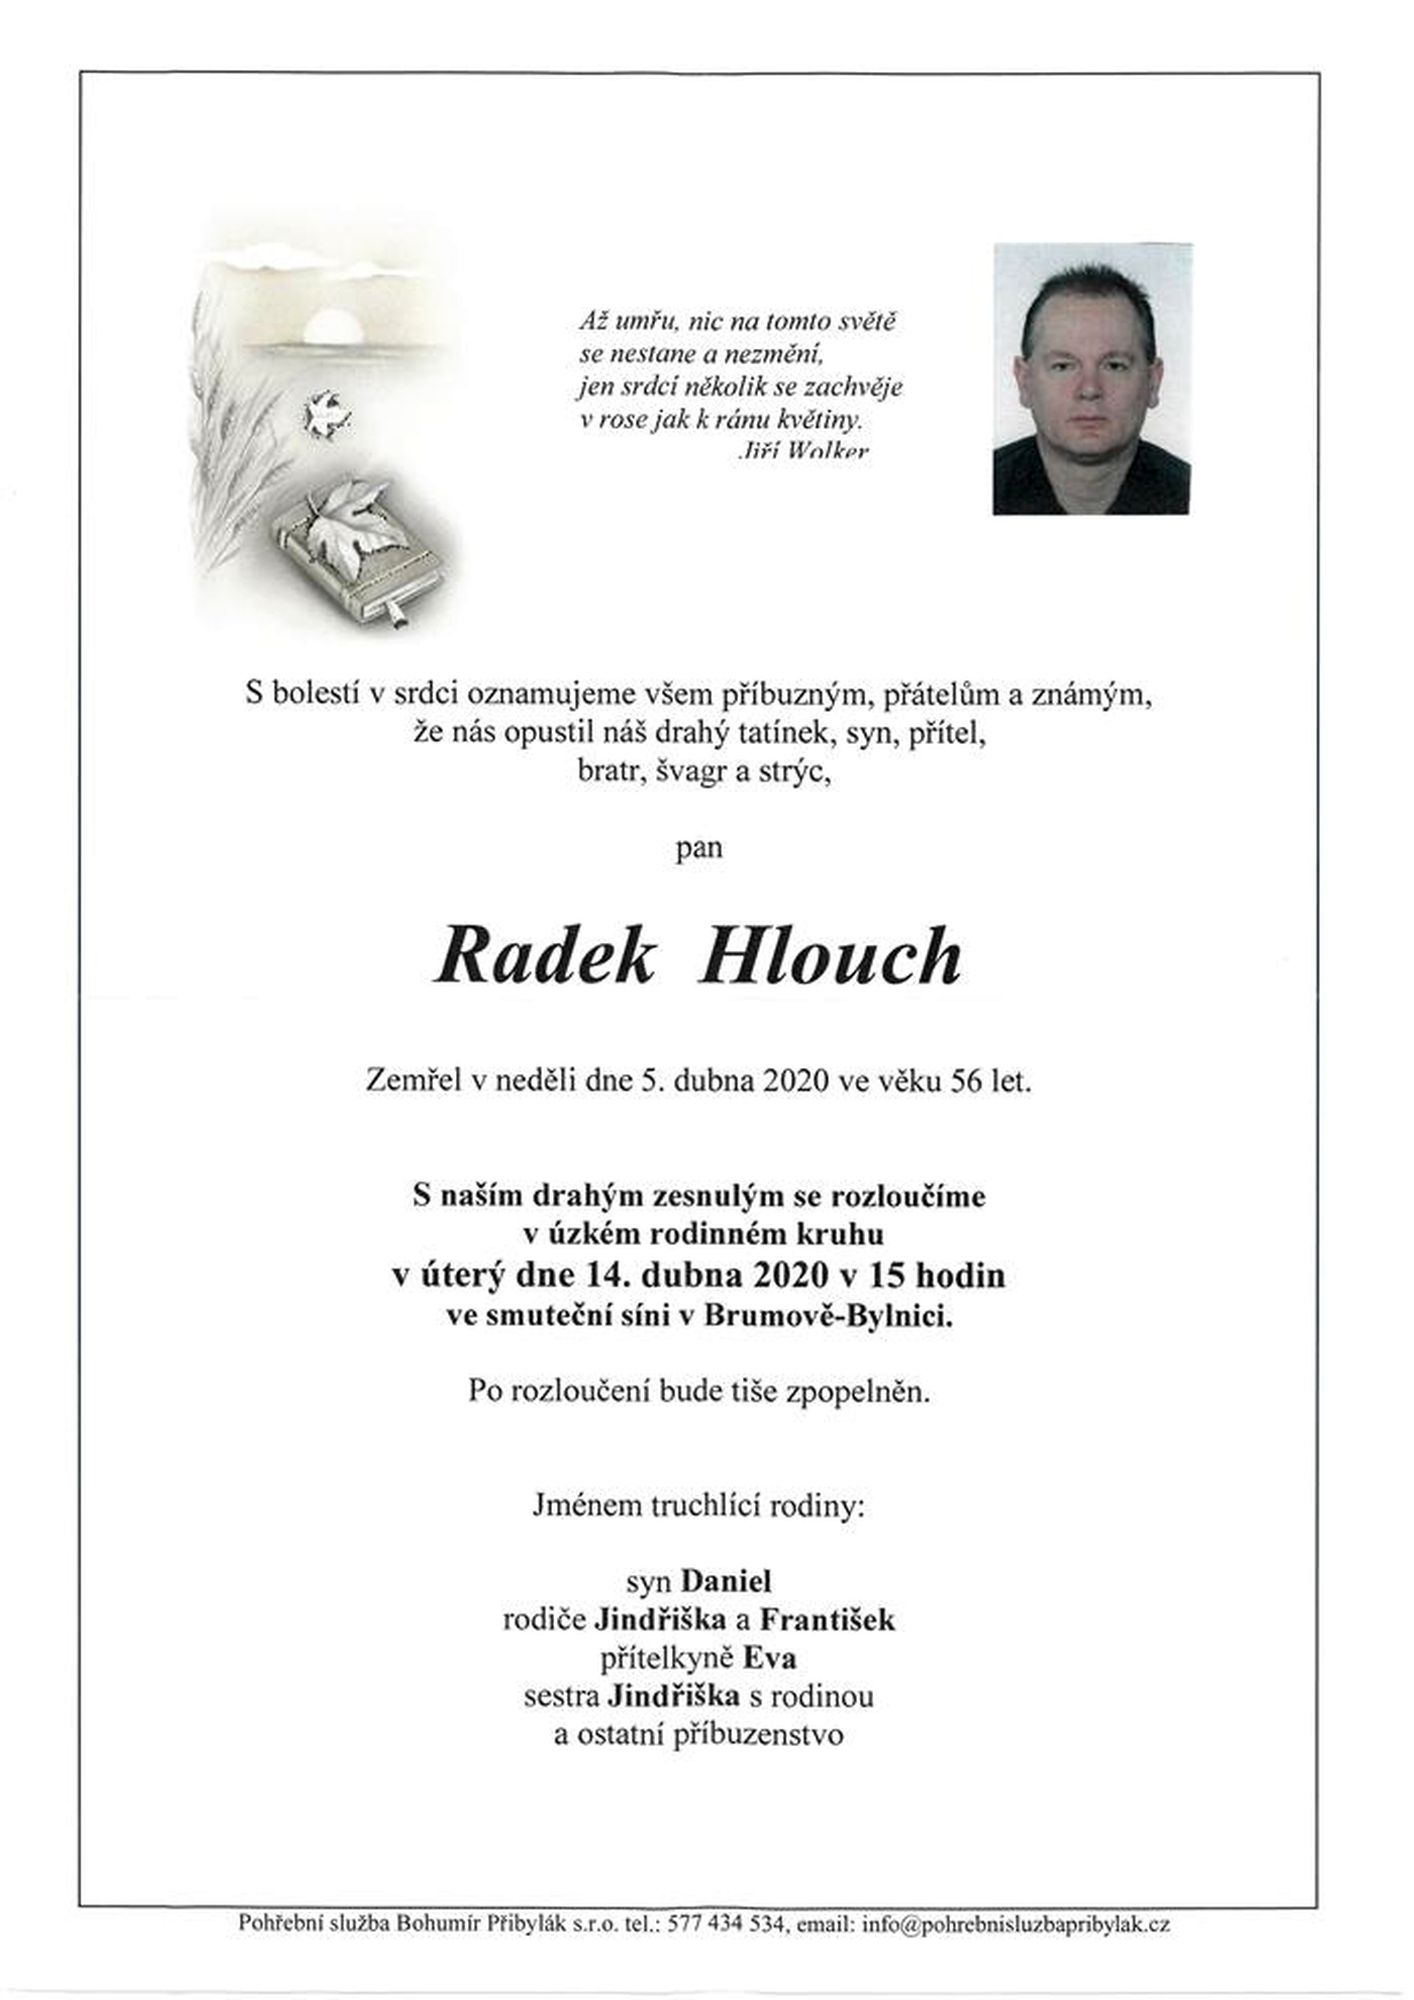 Radek Hlouch